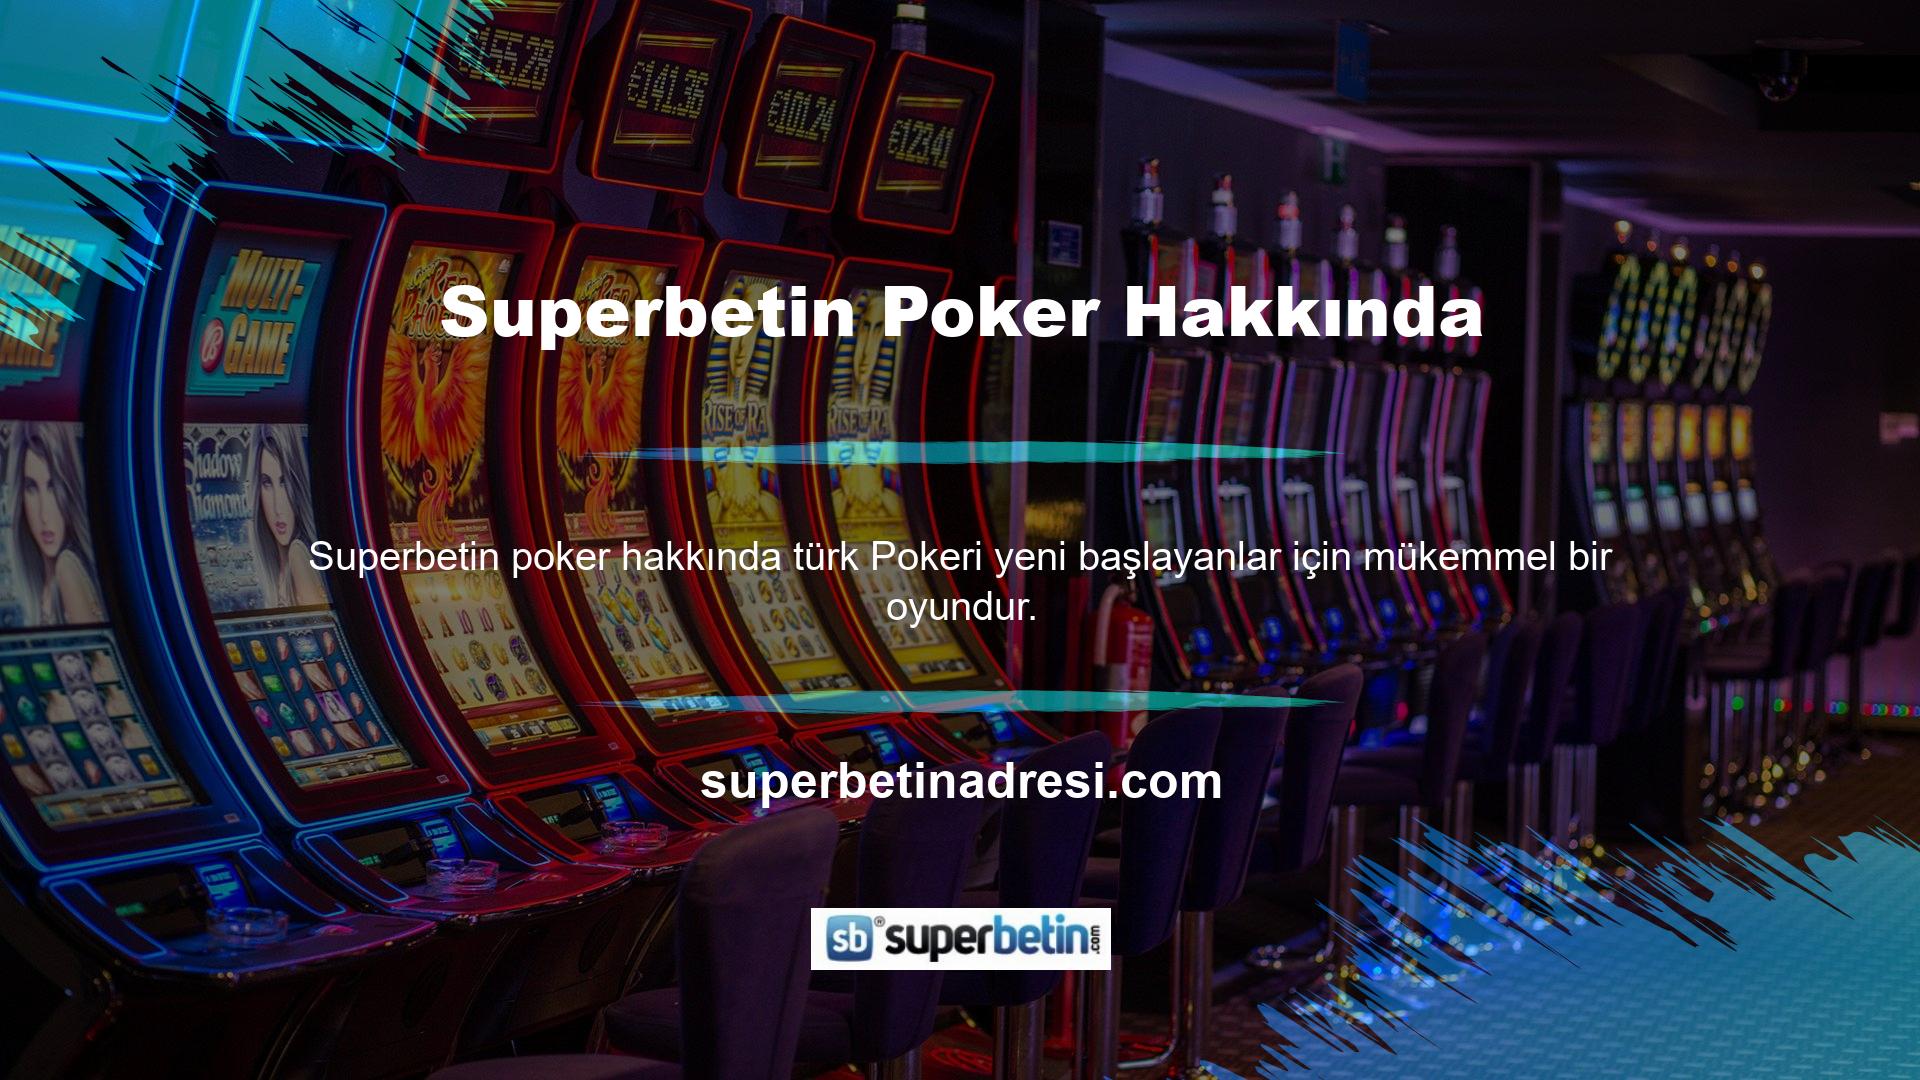 Üye iseniz sitedeki Türk Pokeri seçeneğini seçin ve oyuna katılın